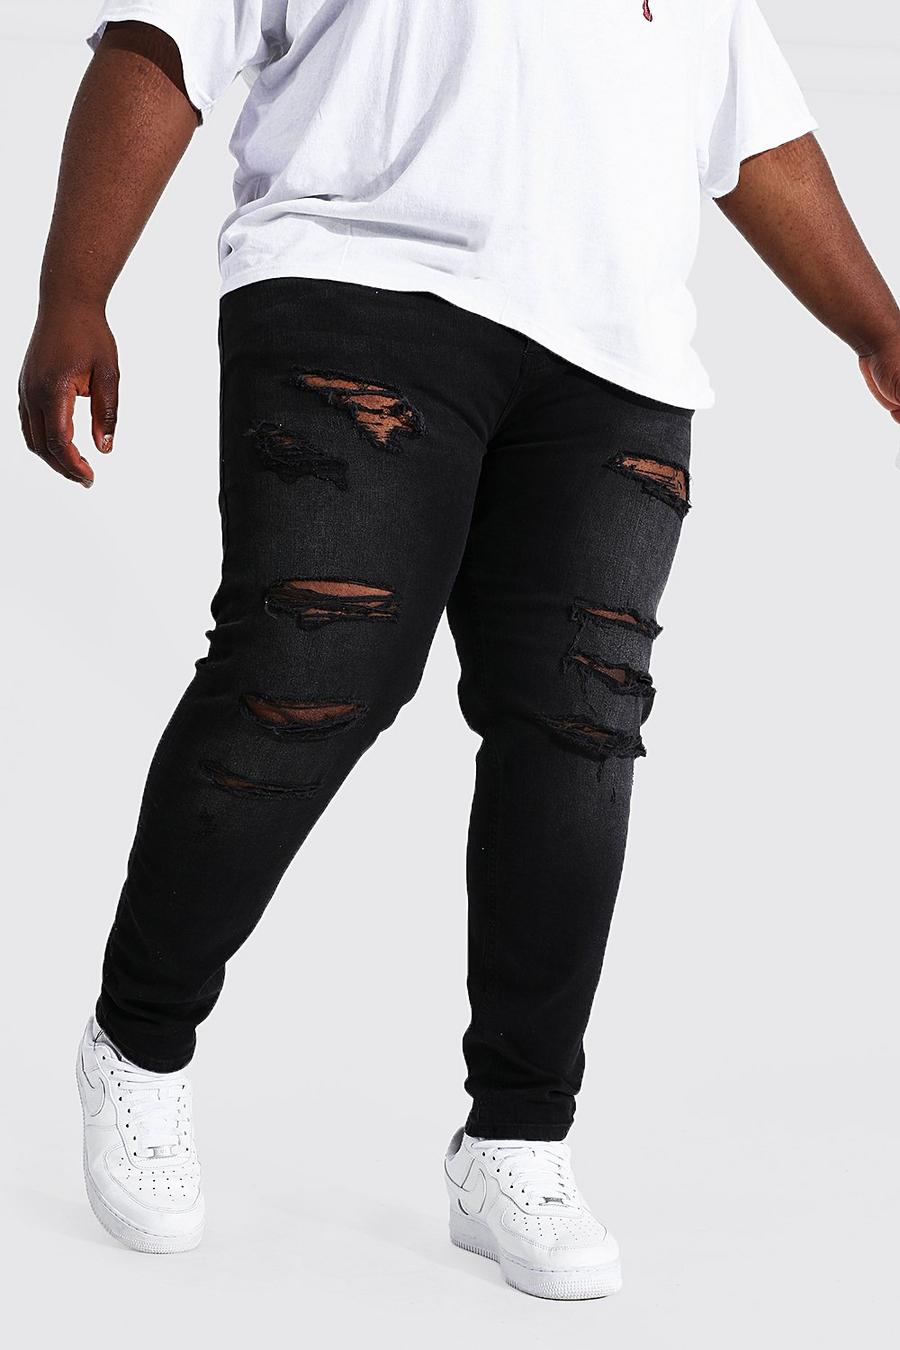 שחור אמיתי סקיני ג'ינס עם קרעים מרובים וקרע גדול בברך, מידות גדולות